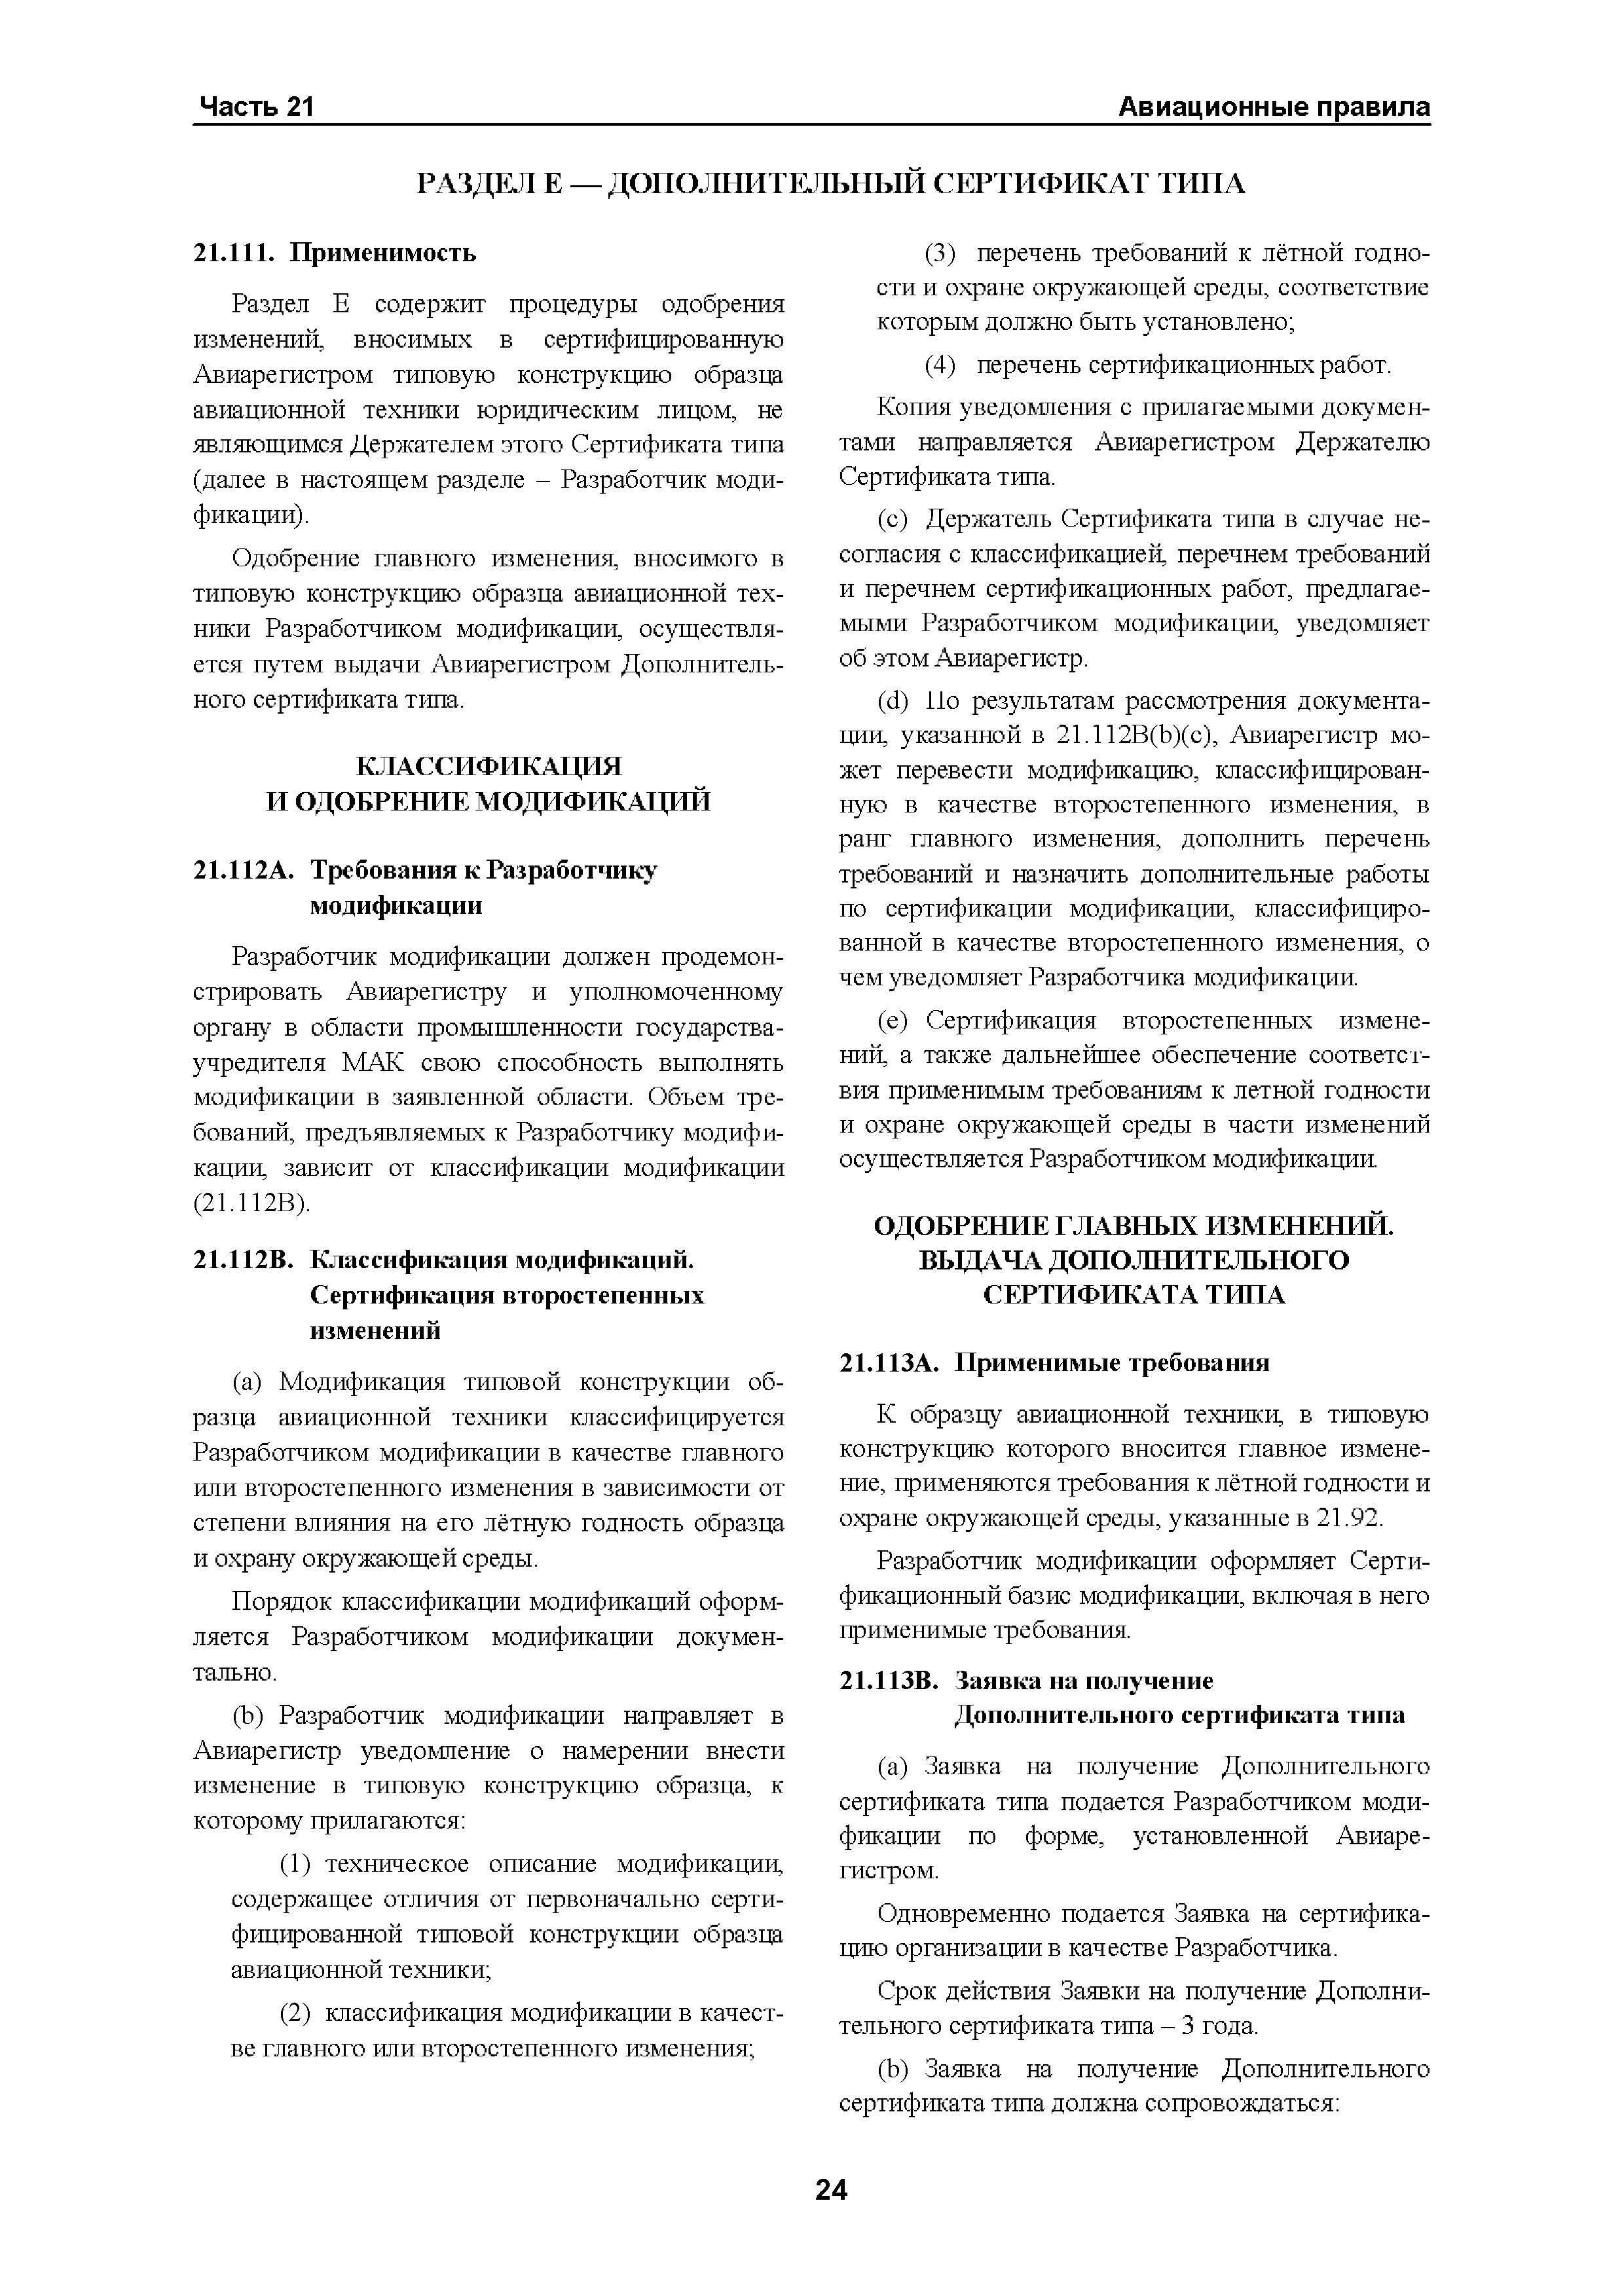 Авиационные правила Часть 21